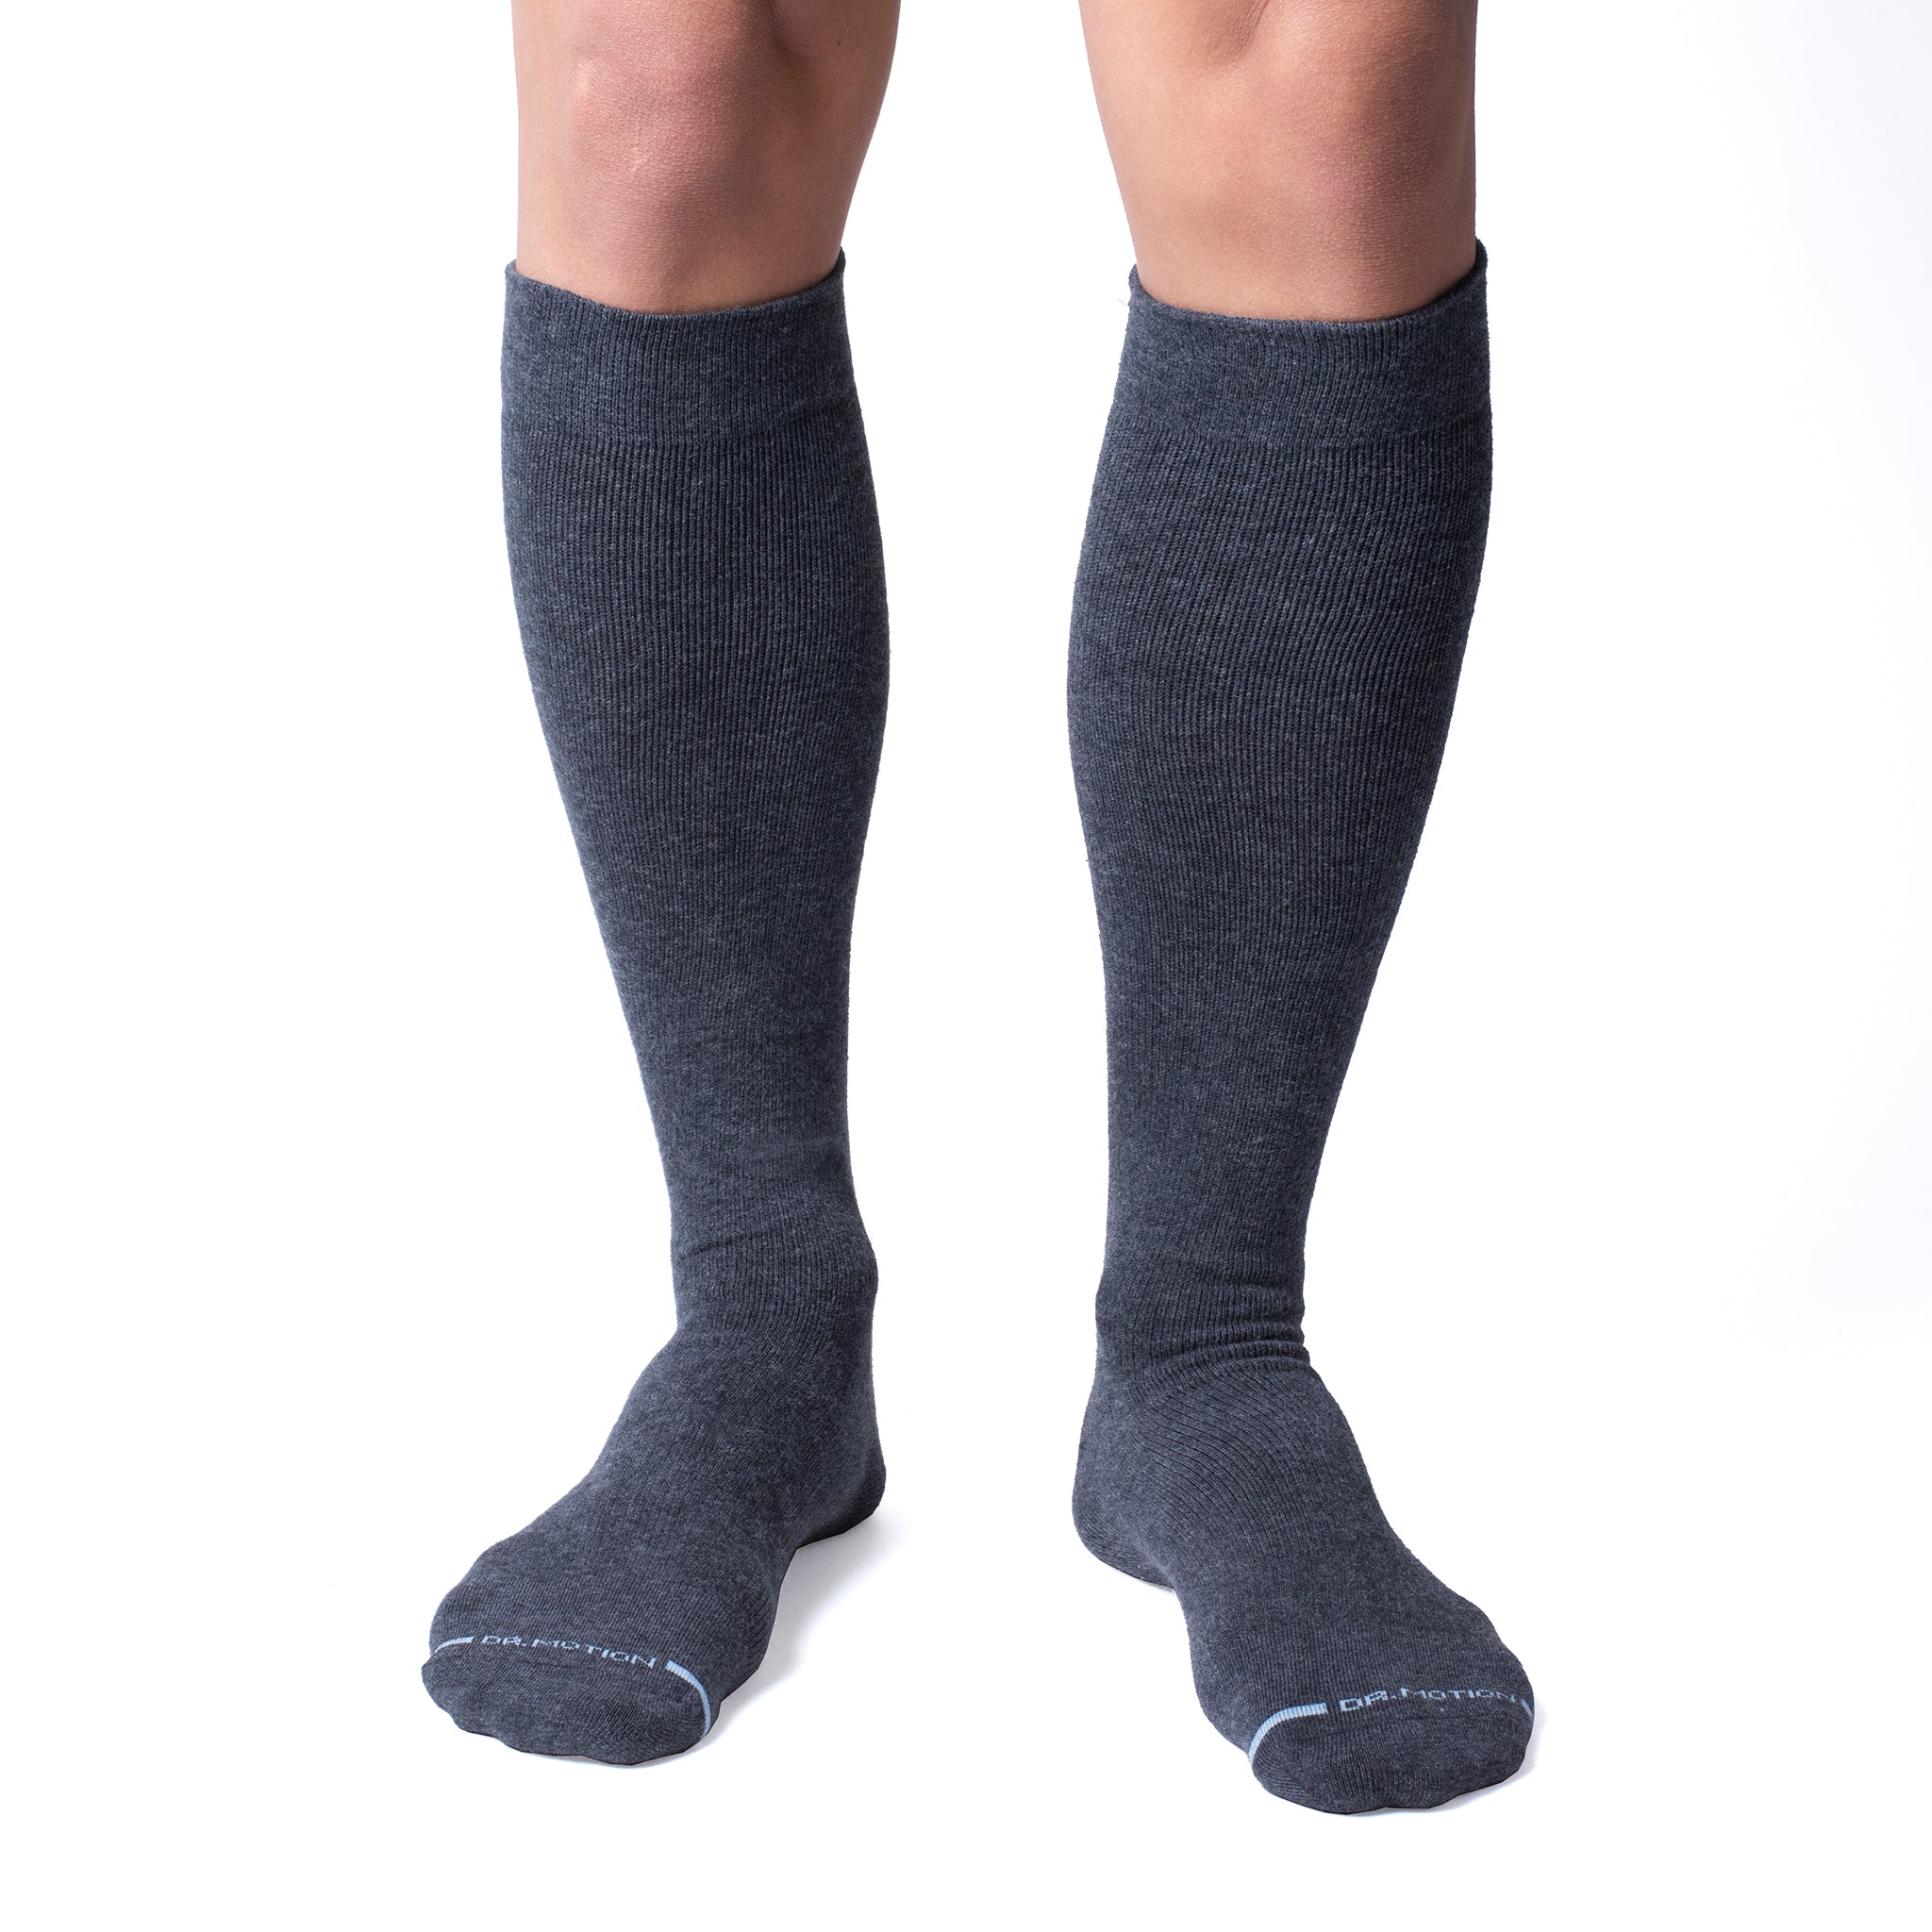 Mens Knee High Compression Socks